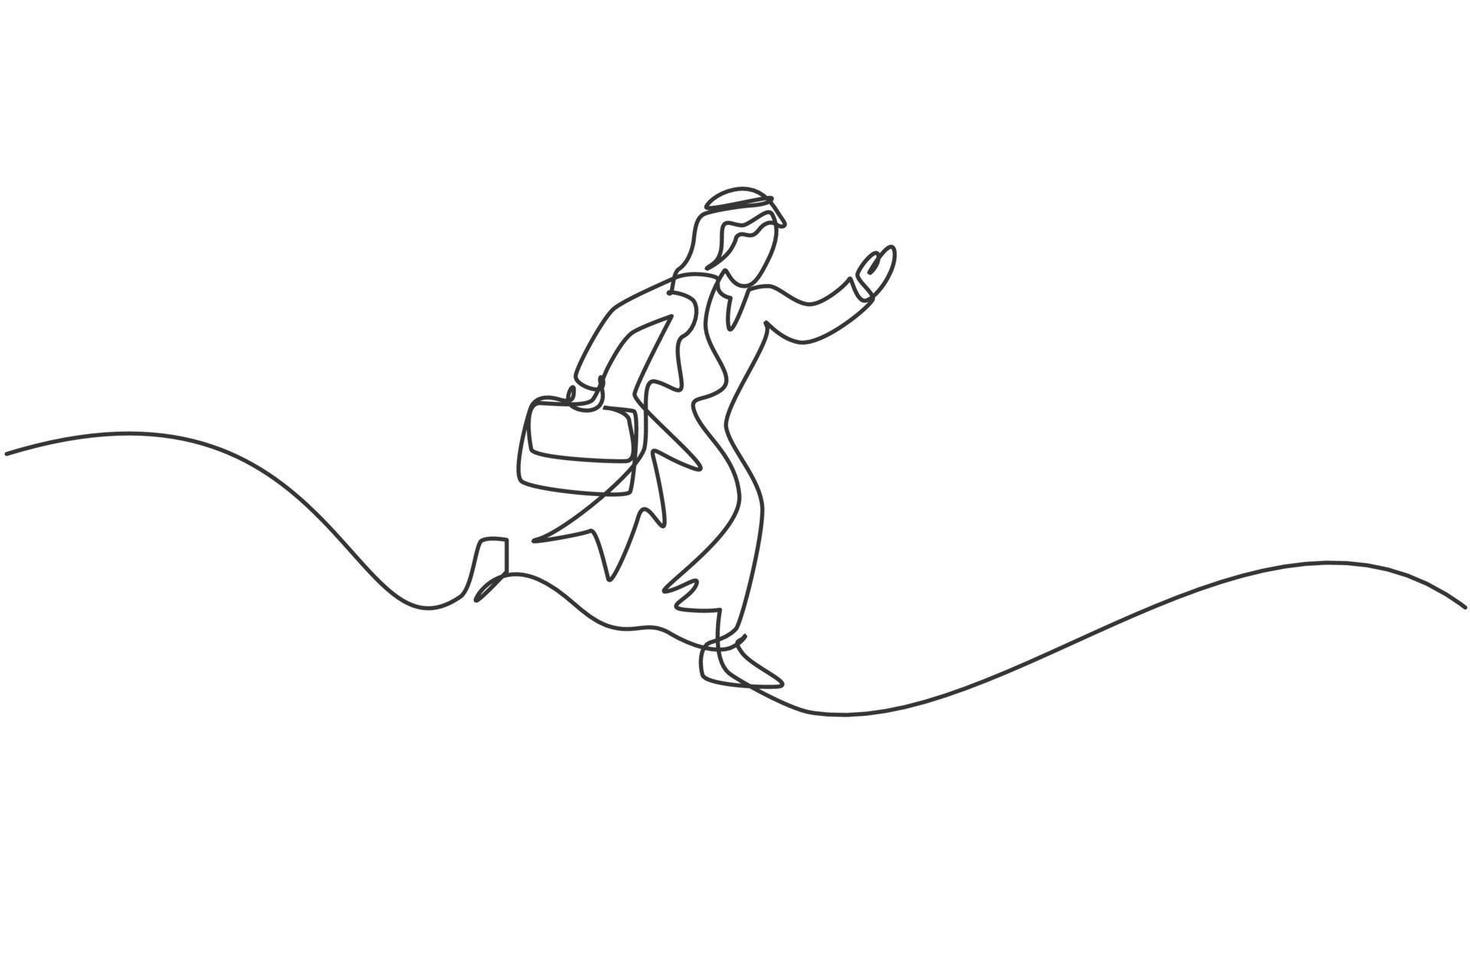 kontinuerlig en radritning av ung glad arabisk manlig arbetare som hoppar högt till himlen. framgång affärschef minimalistisk metafor koncept. enkel linje rita design vektor grafisk illustration